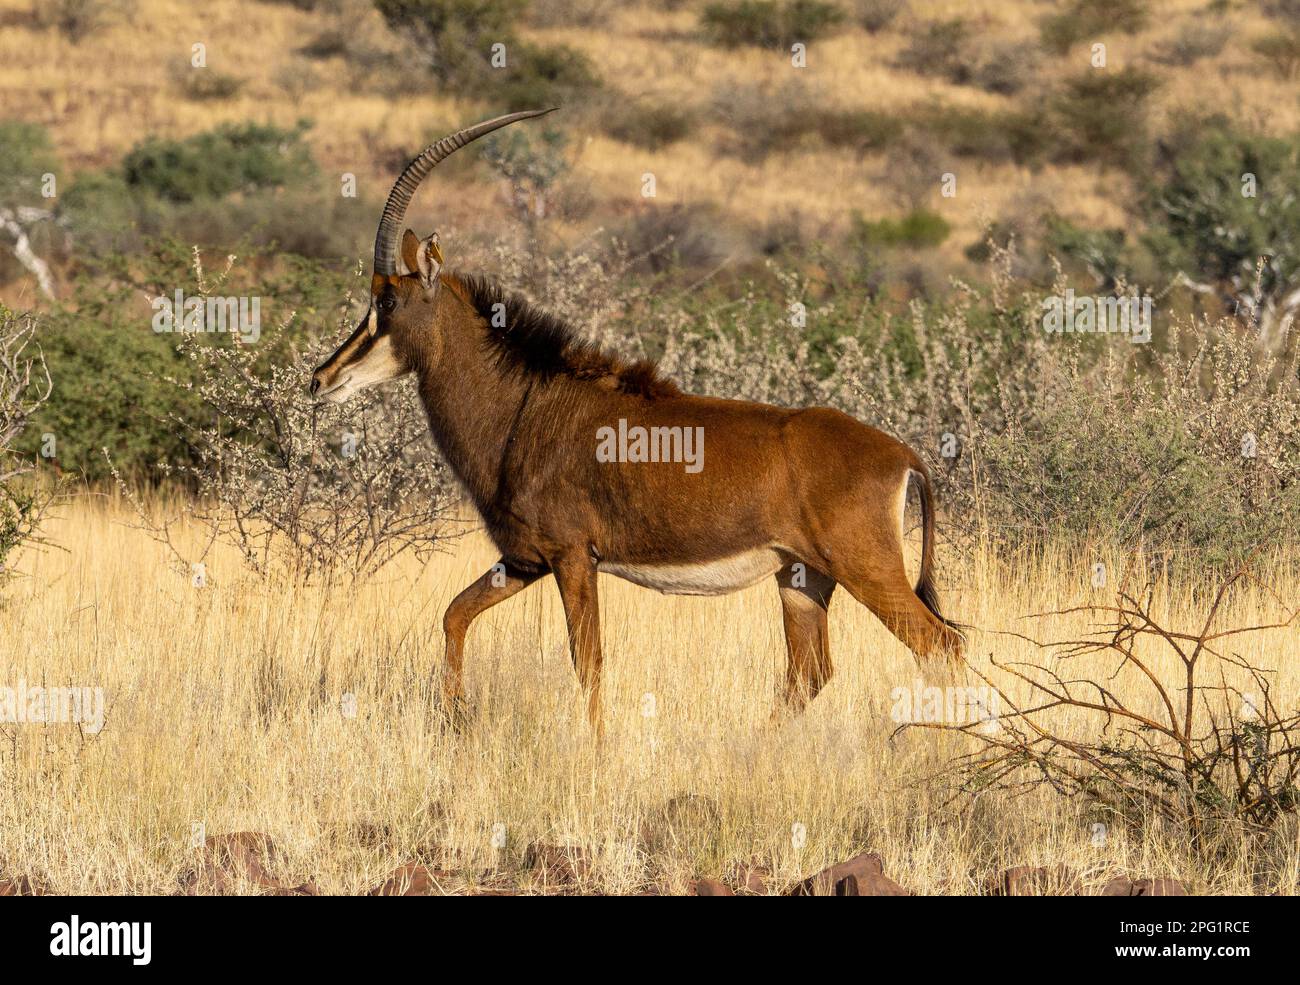 Antilope de sable, Mariental, Namibie Banque D'Images